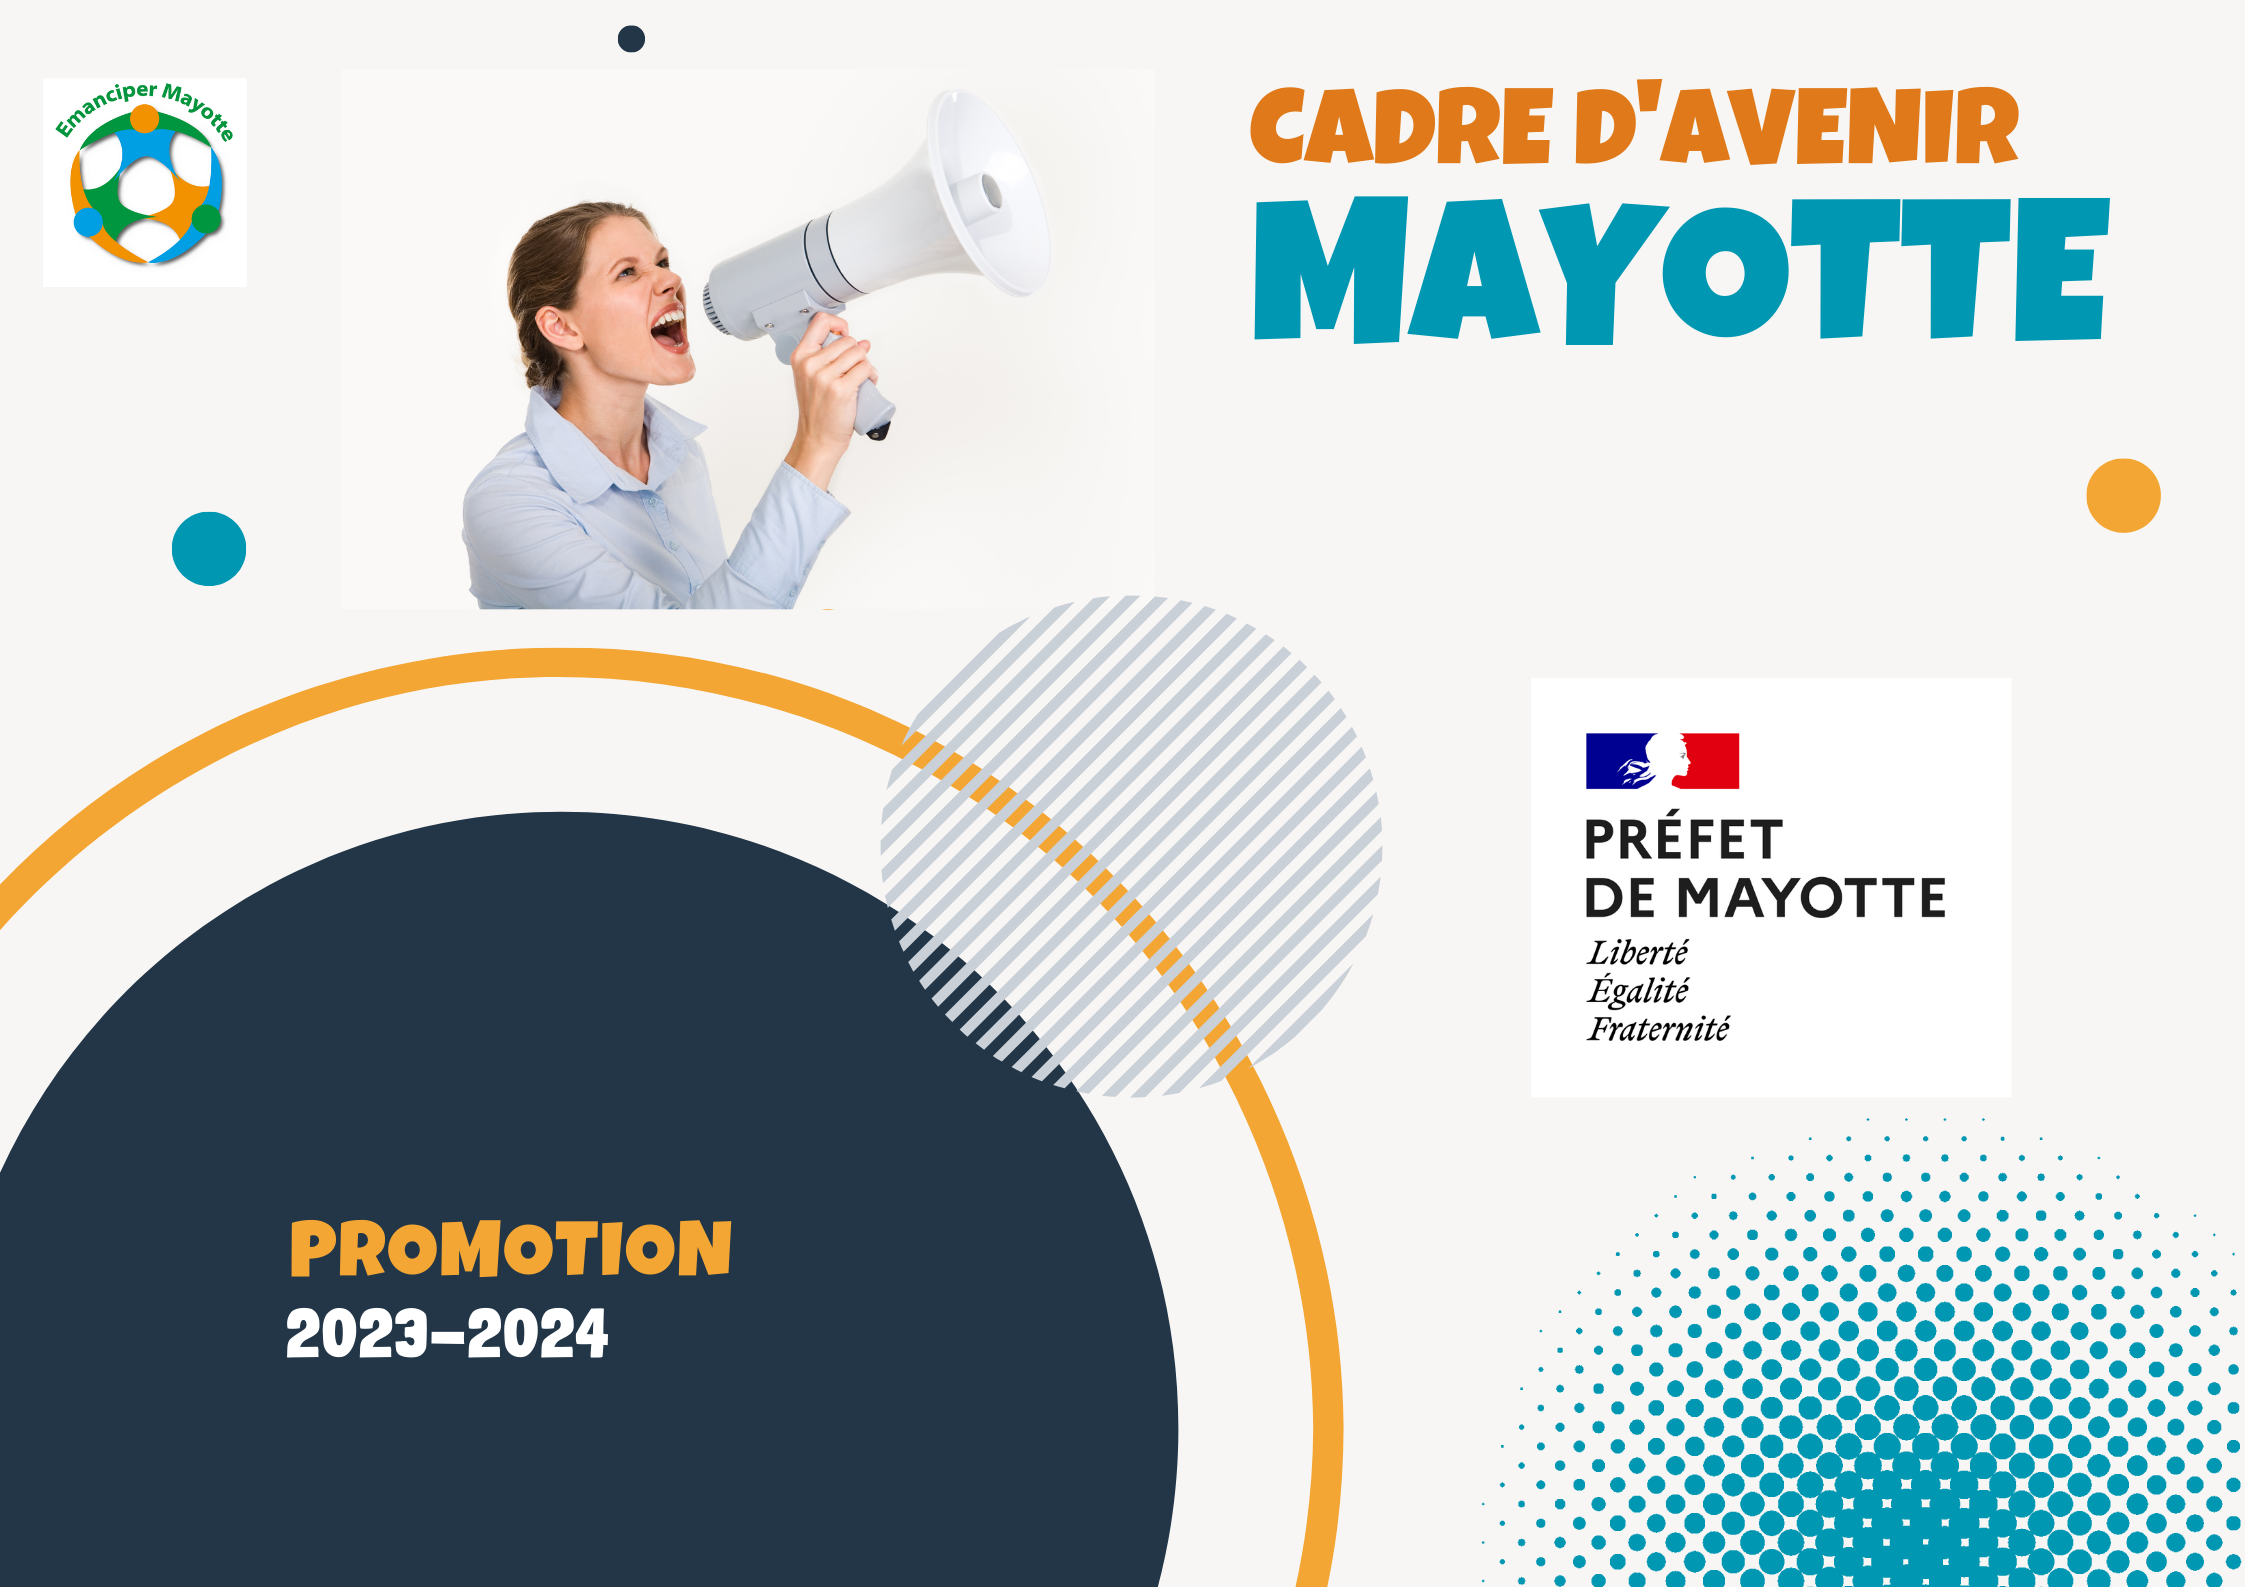 Cadre d'avenir Mayotte : Ouverture candidature pour la promotion 2023-2024